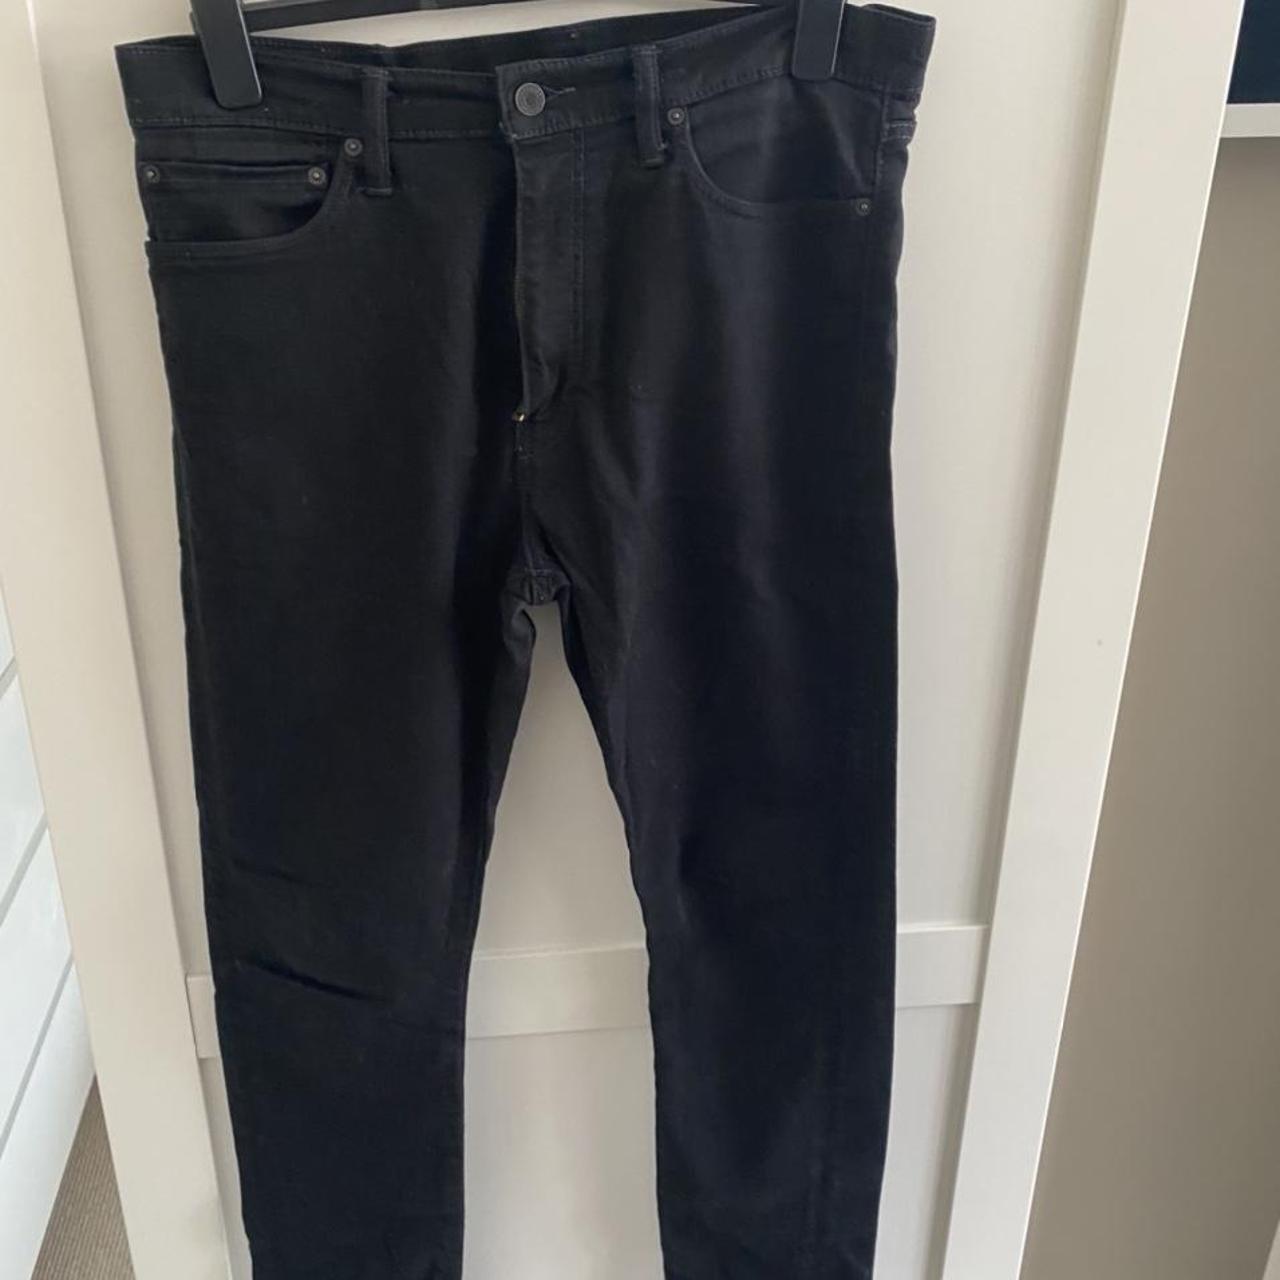 Mens Levi’s jeans black excellent condition size 36w... - Depop